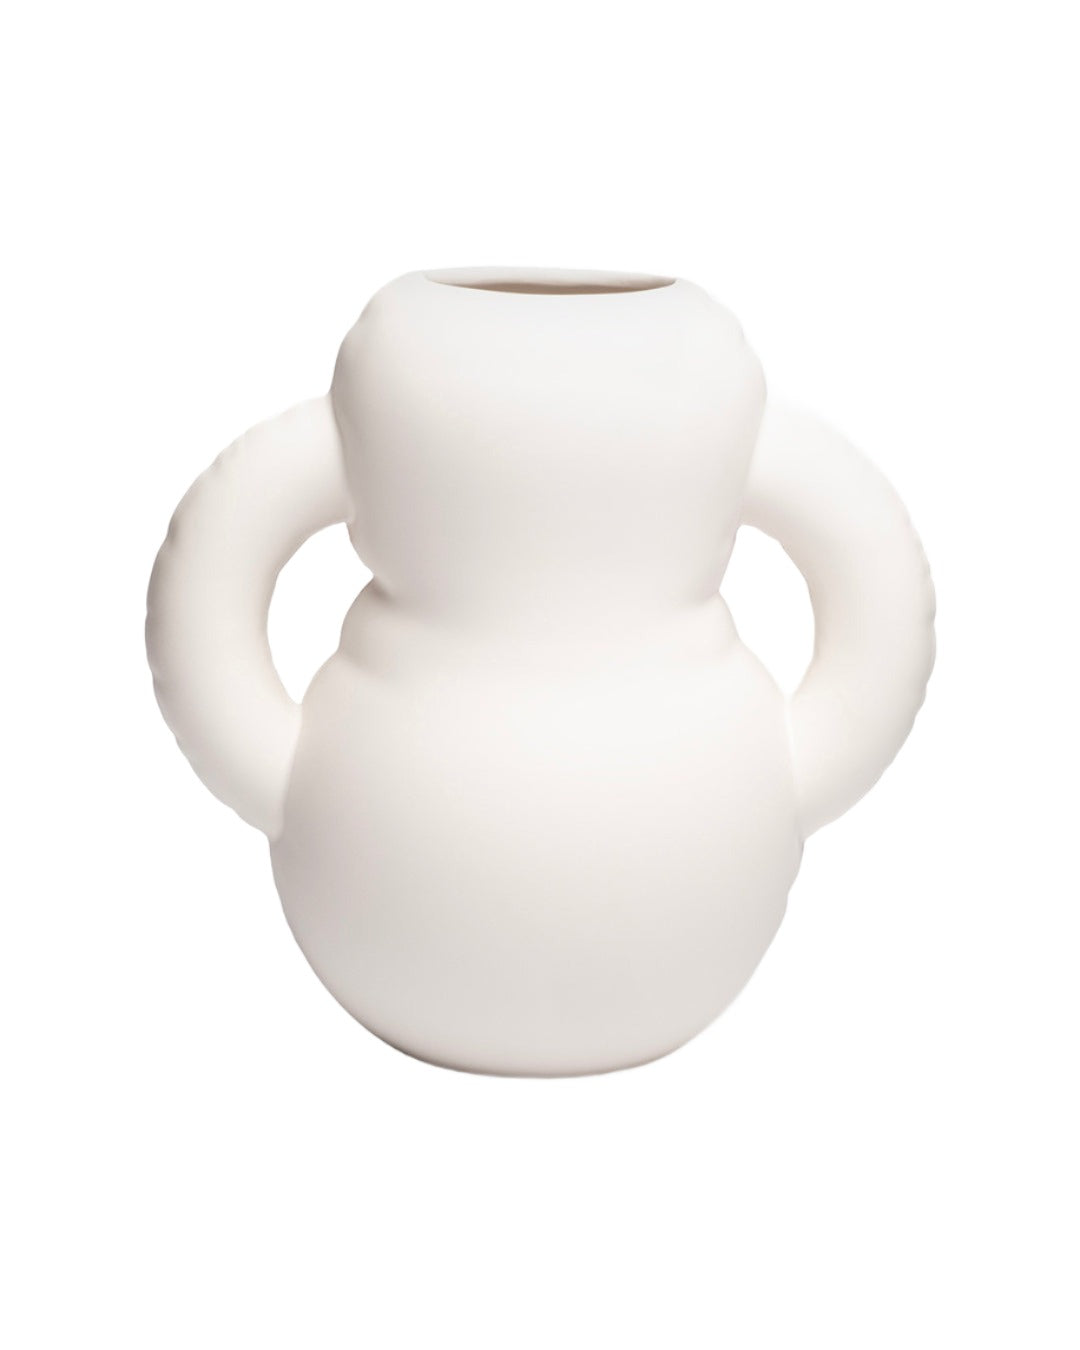 Handamde ceramic vase - Home Studyo